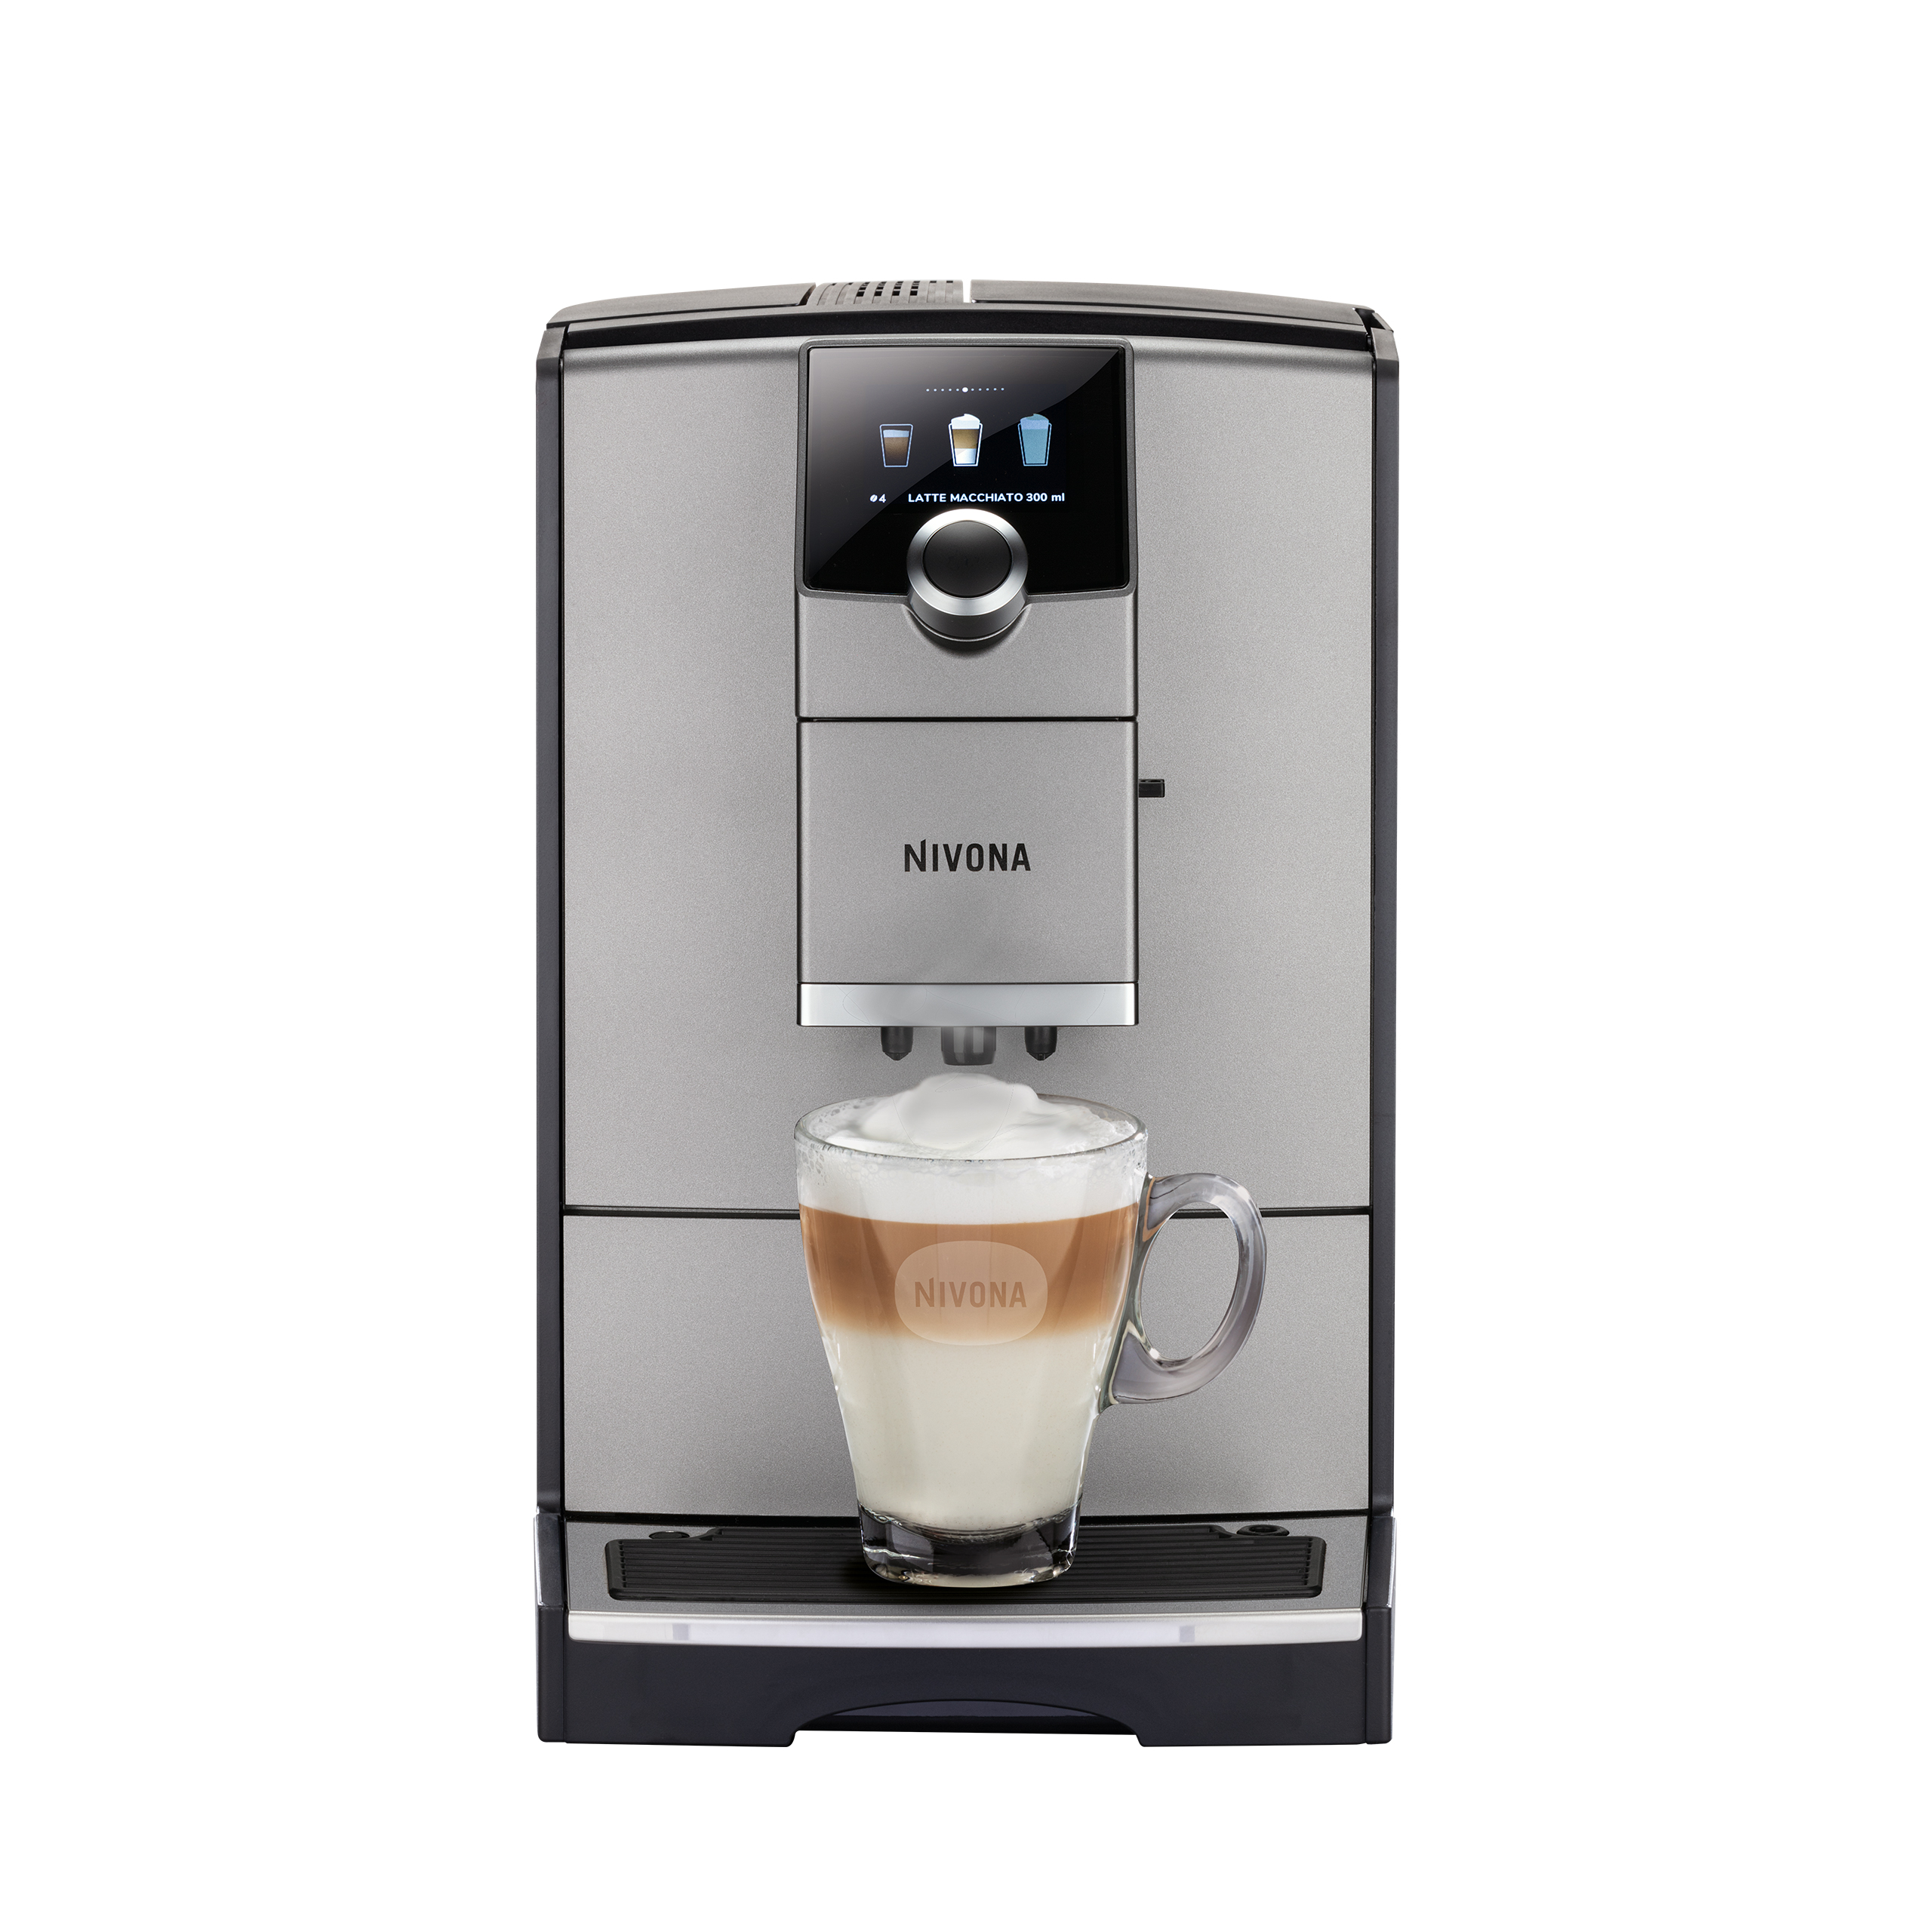 NICR 795 CafeRomatica fully automatic espresso machine